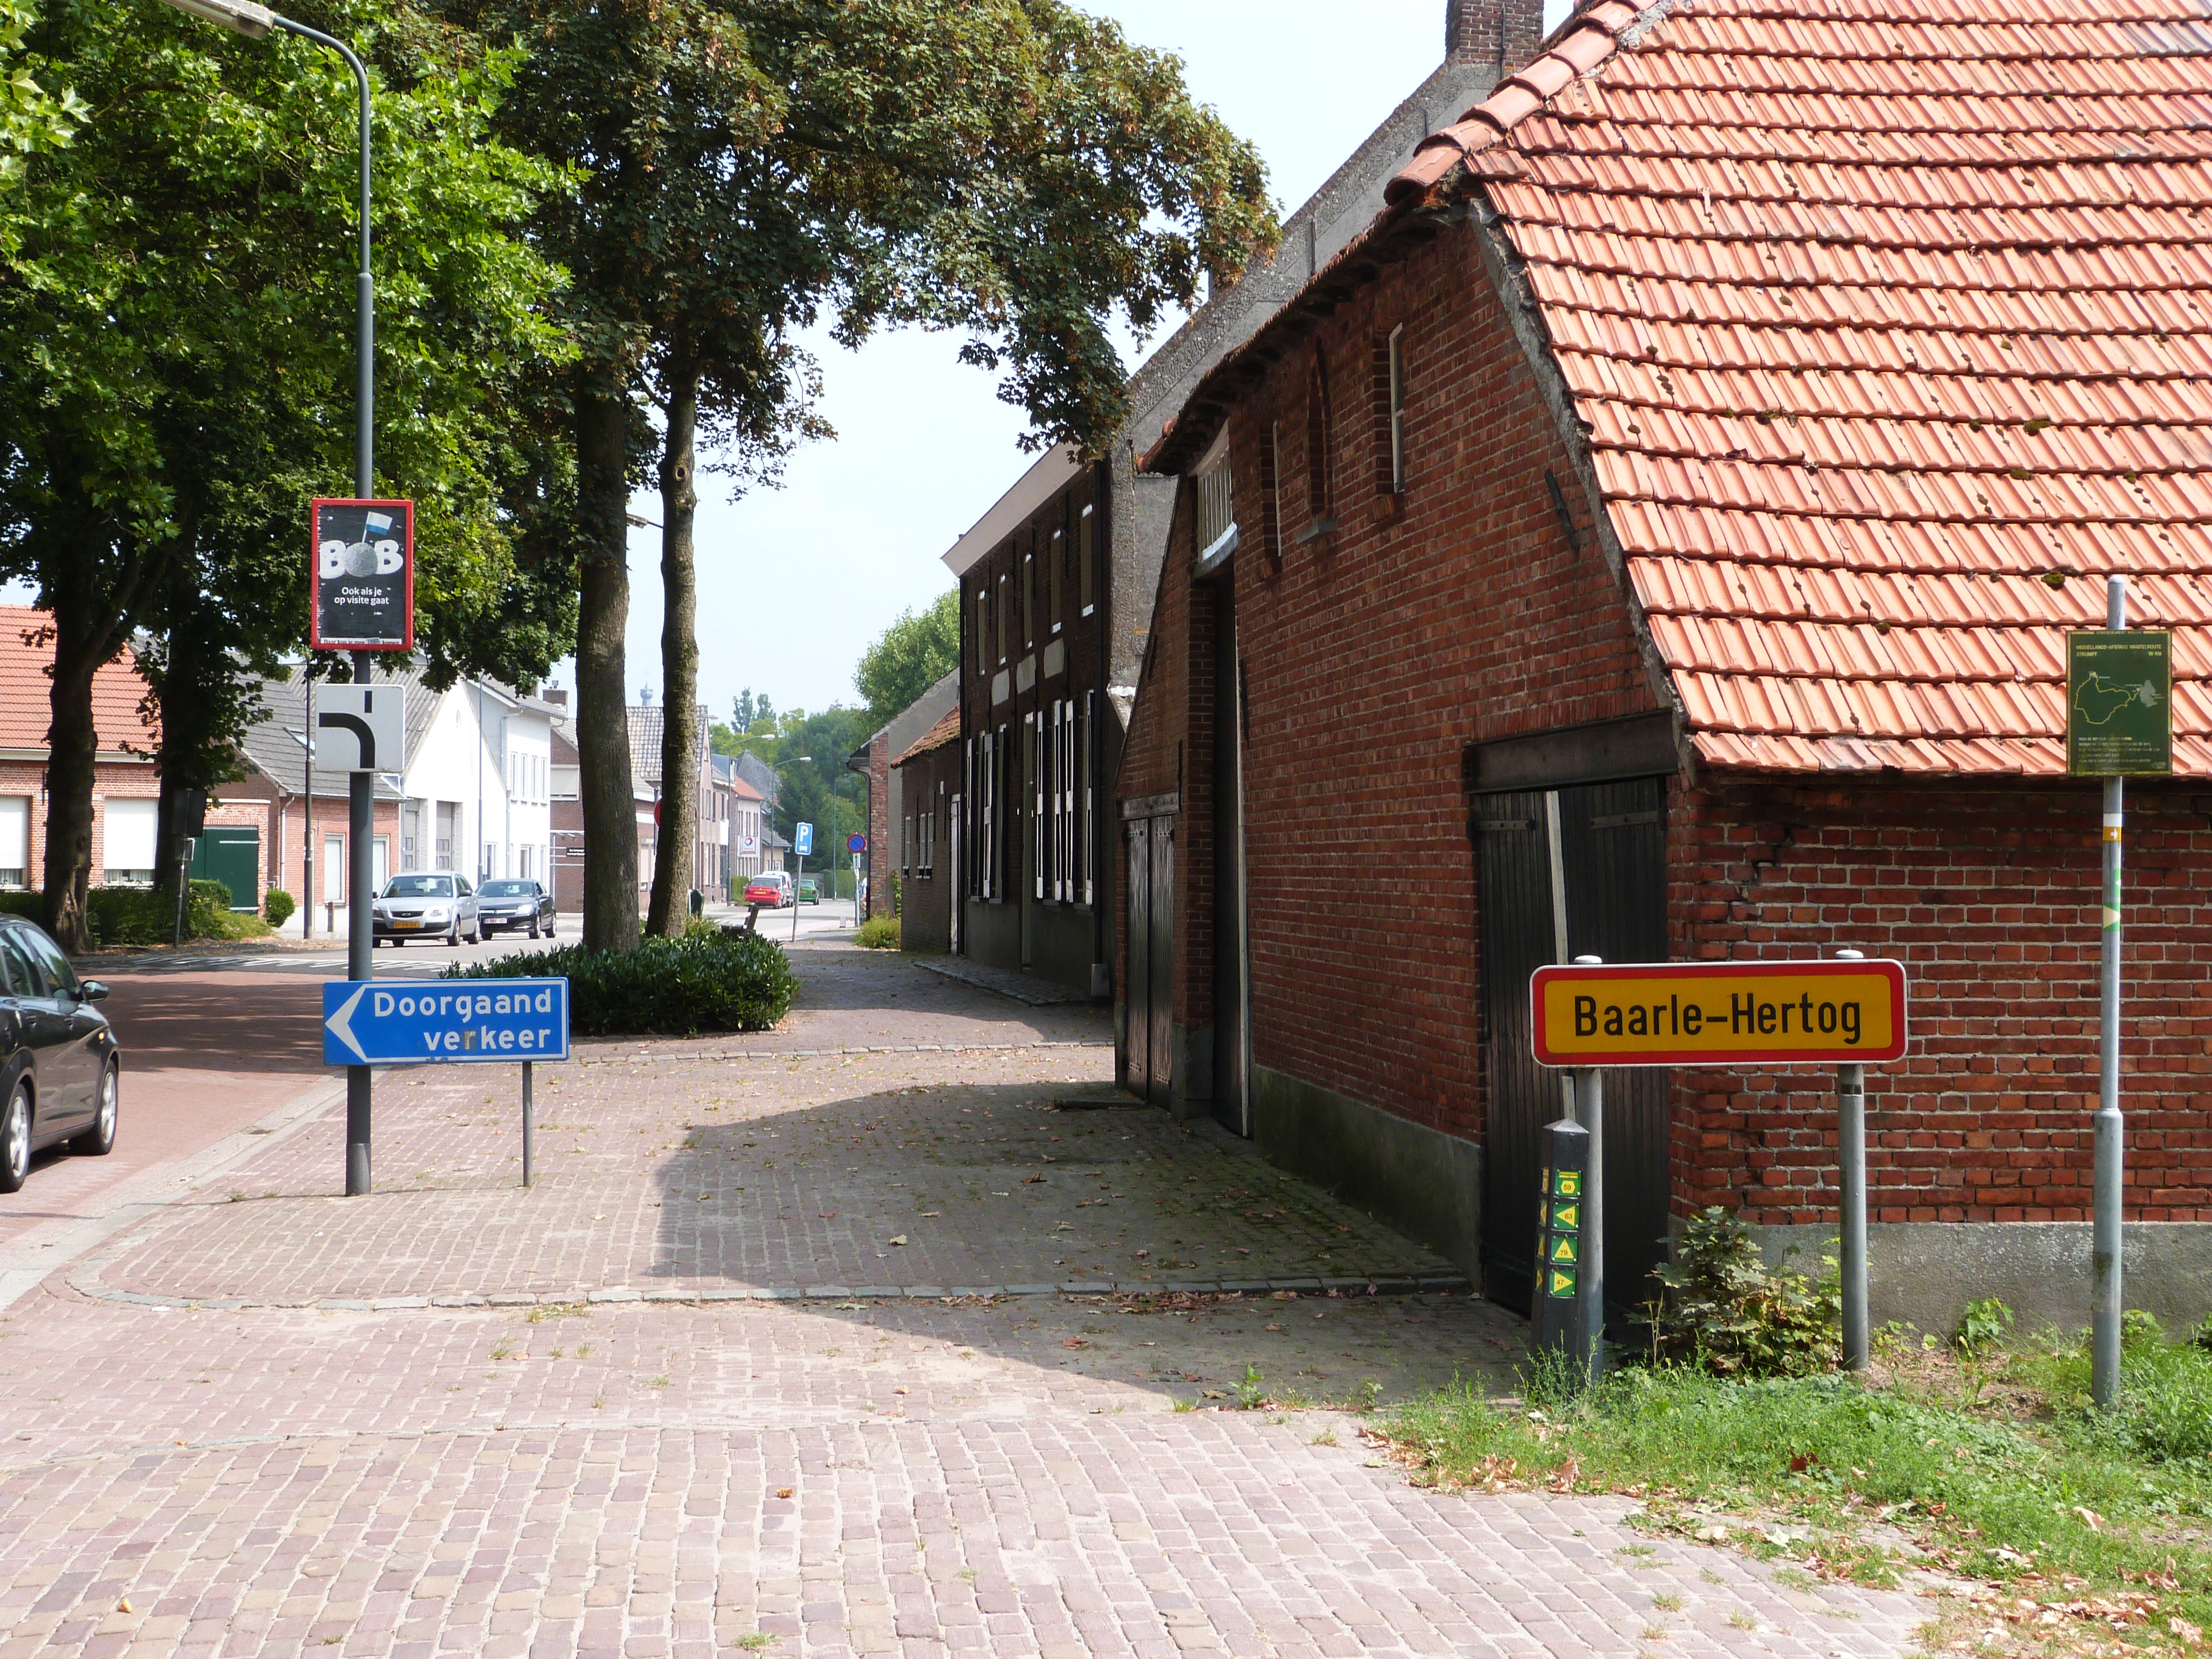 Baarle-Hertog borders - exclave of Belgium